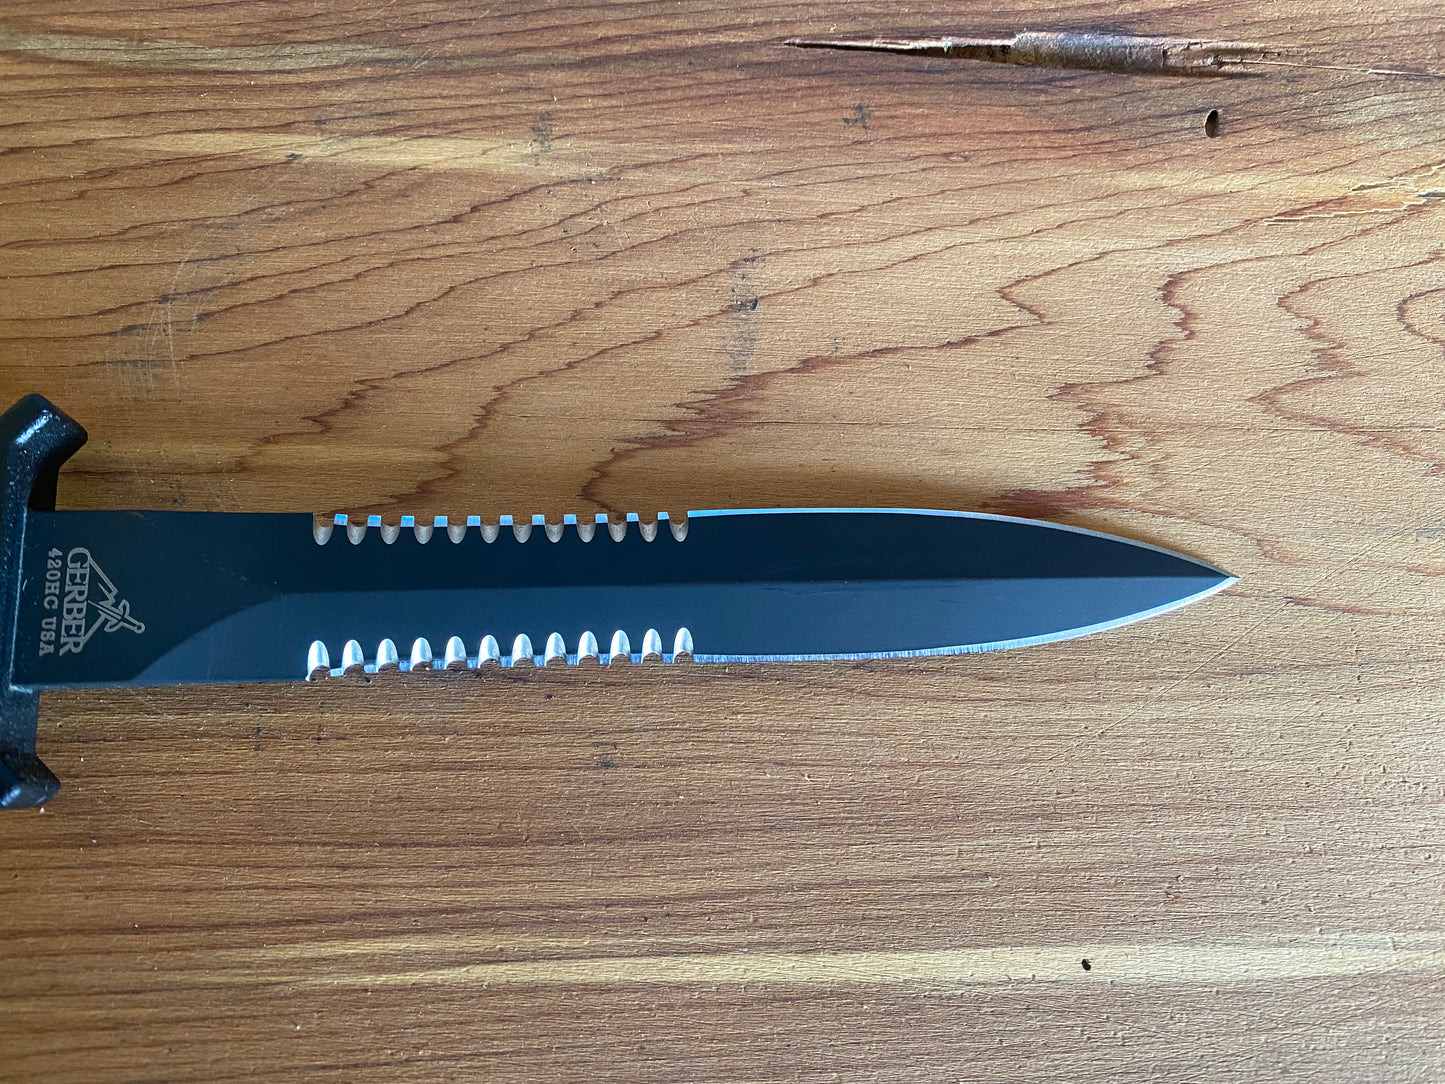 2010 Gerber Mark II Sheath Knife